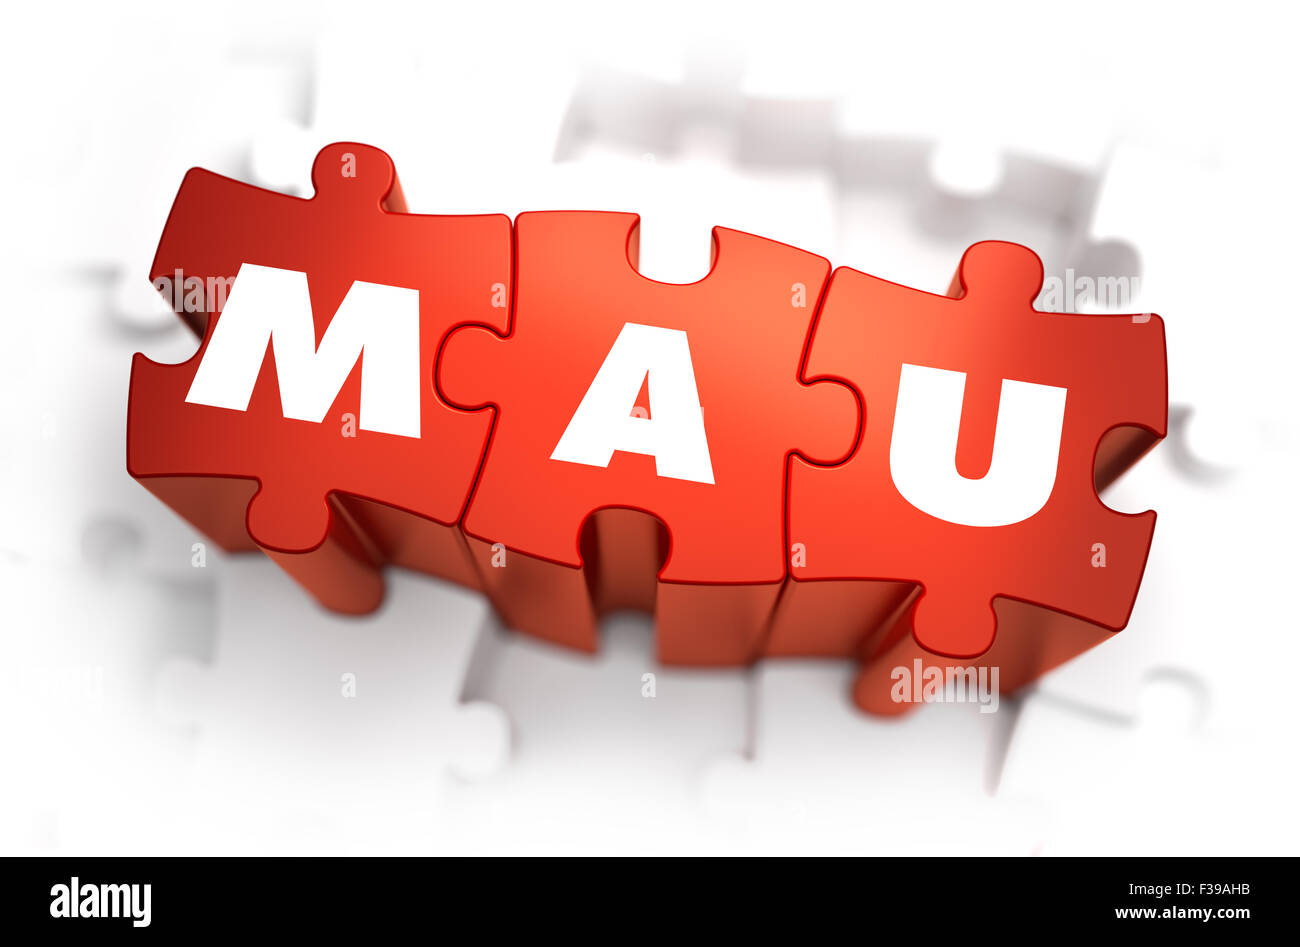 Word - MAU - monatlich aktive Nutzer - rote Rätsel mit weißem Hintergrund. 3D Render. Stockfoto